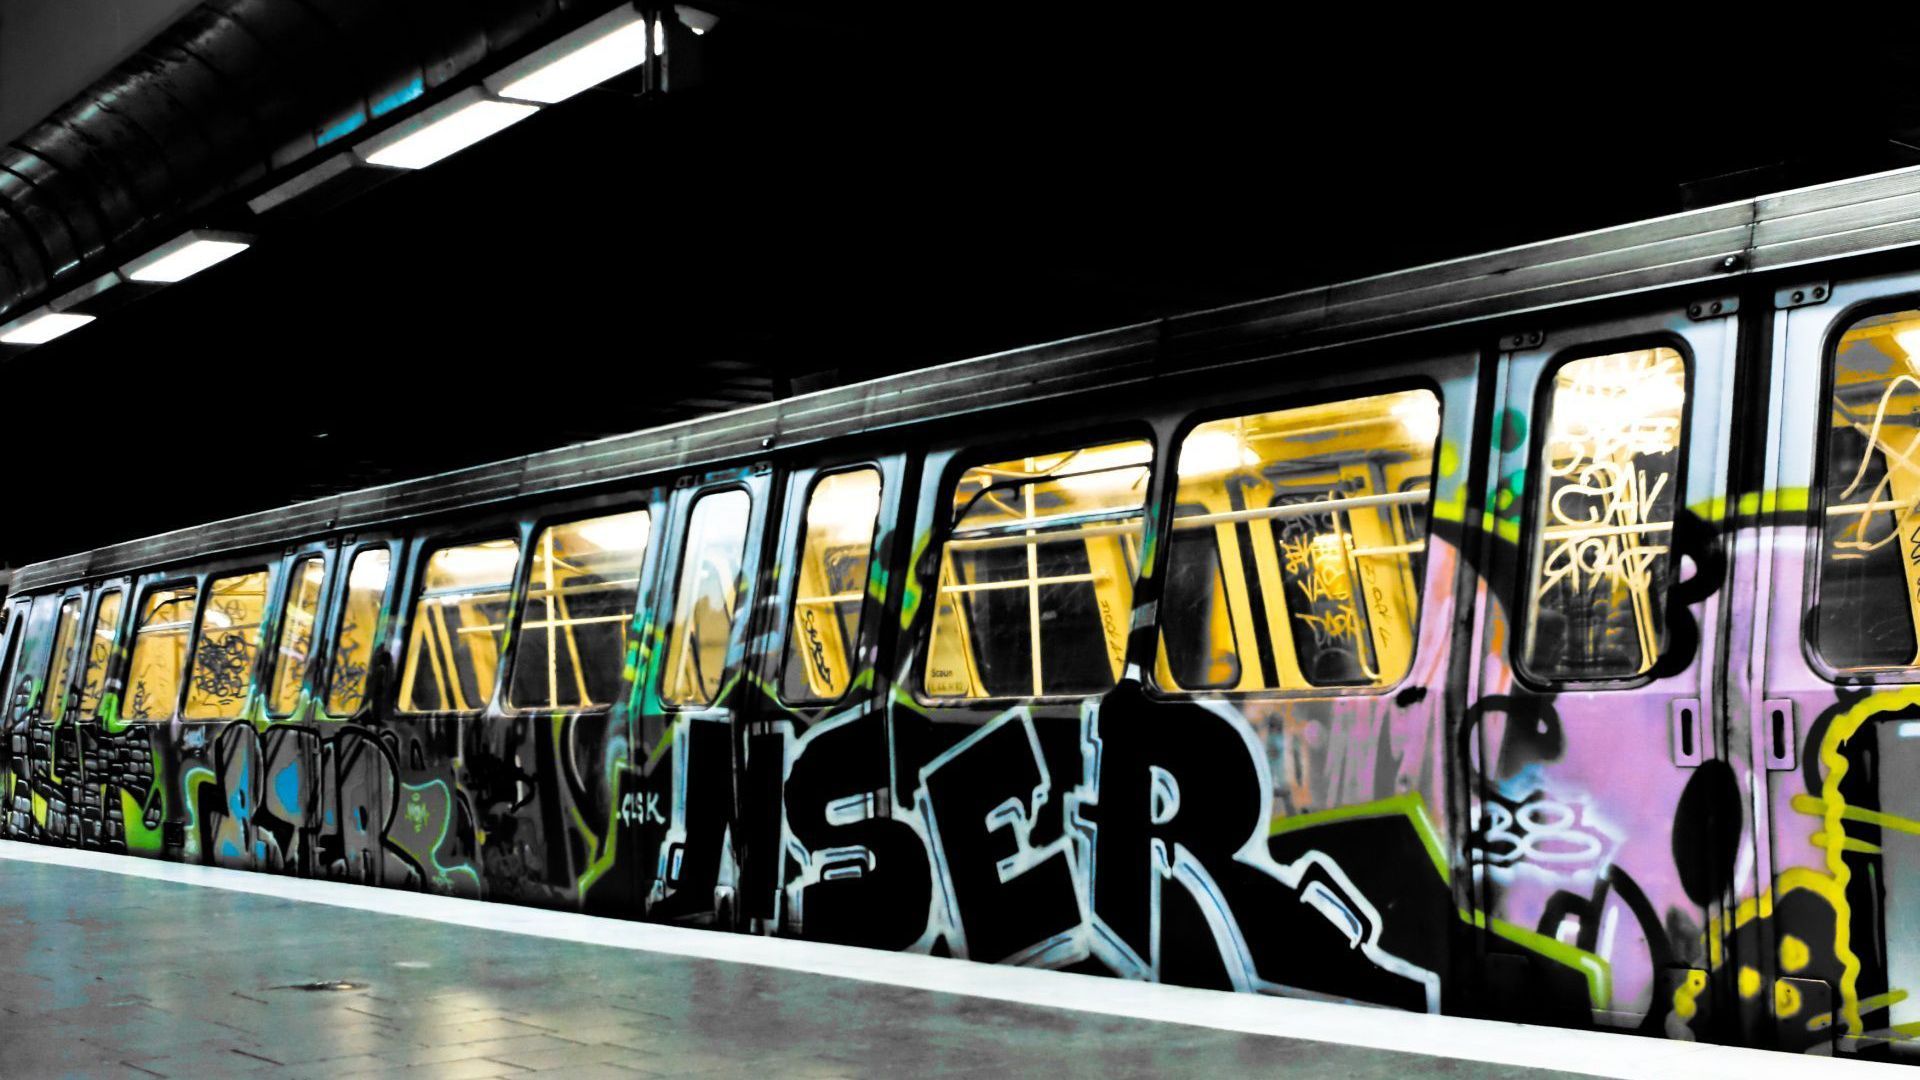 Train Graffiti HD Wallpaper | 1920x1080 | ID:31749